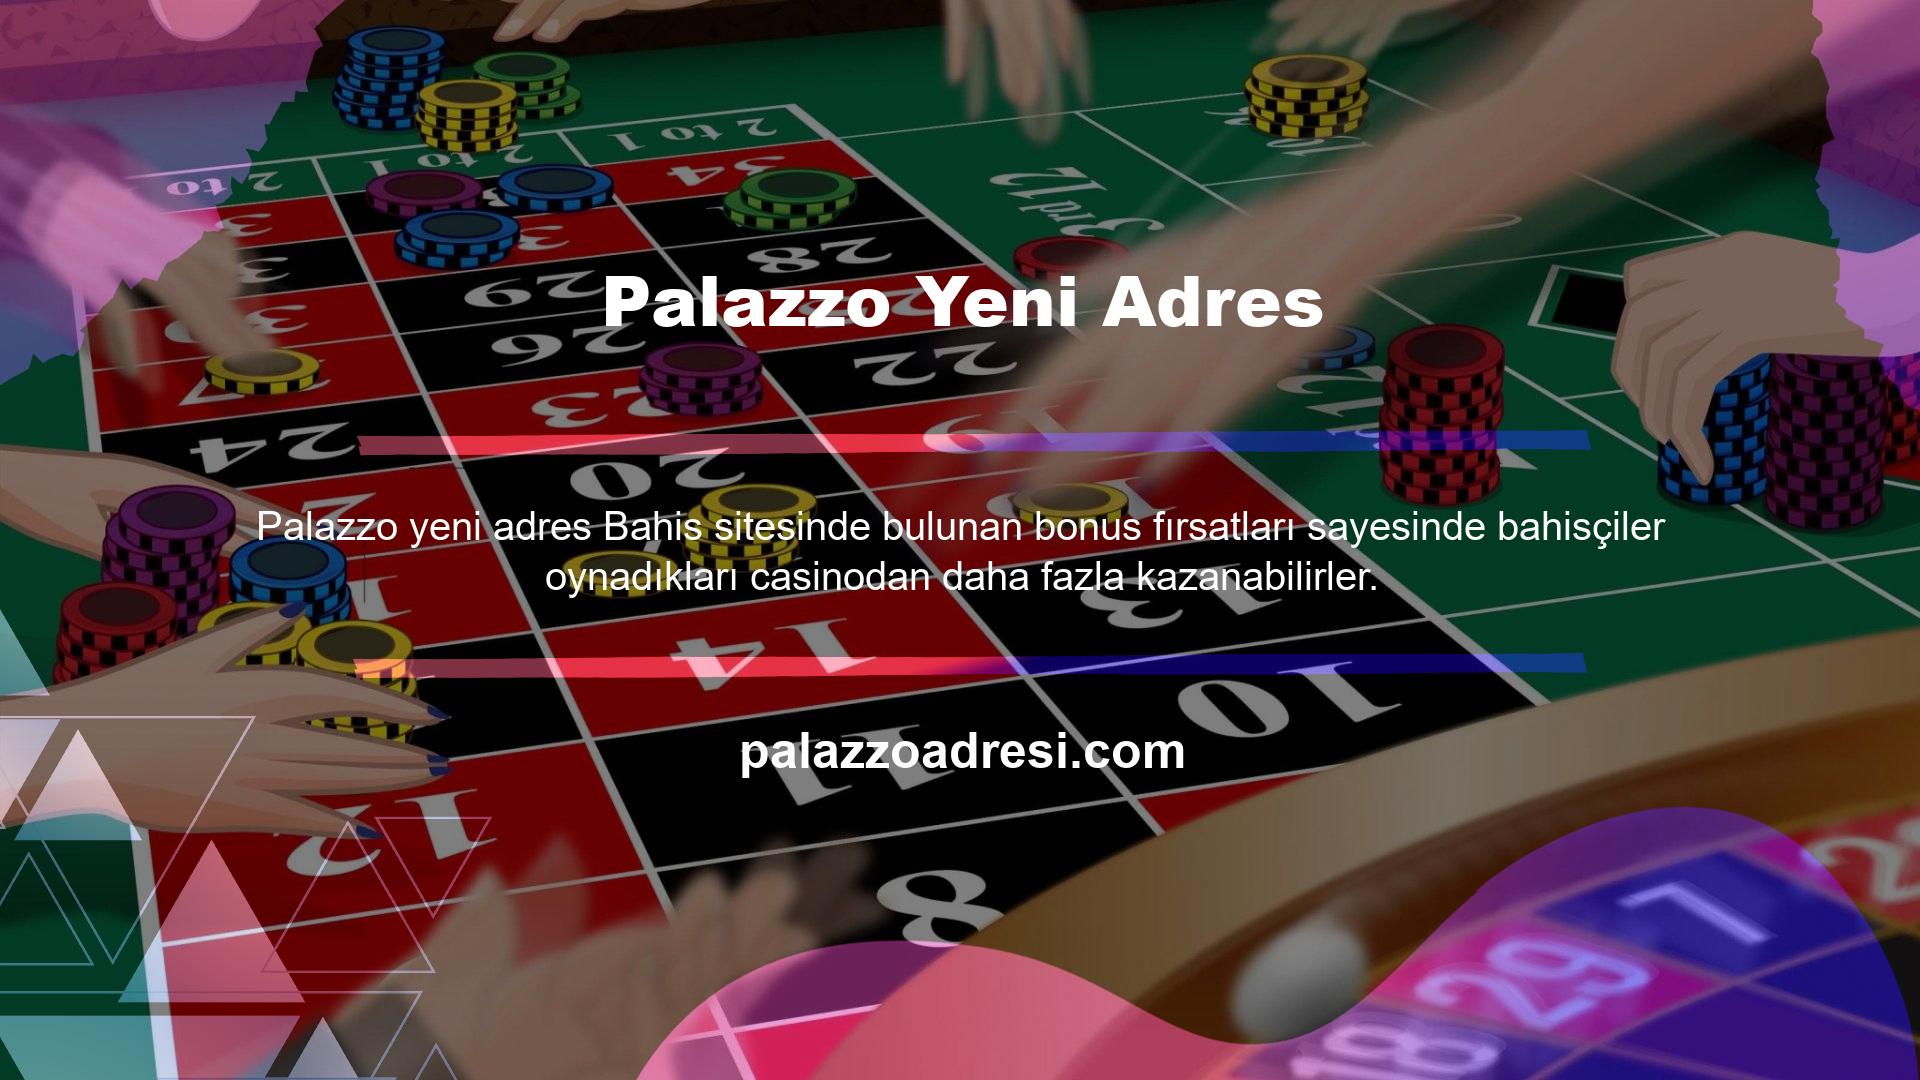 Palazzo üyeleri de siteden memnun olup çeşitli oyun seçeneklerini kullanmaktadır